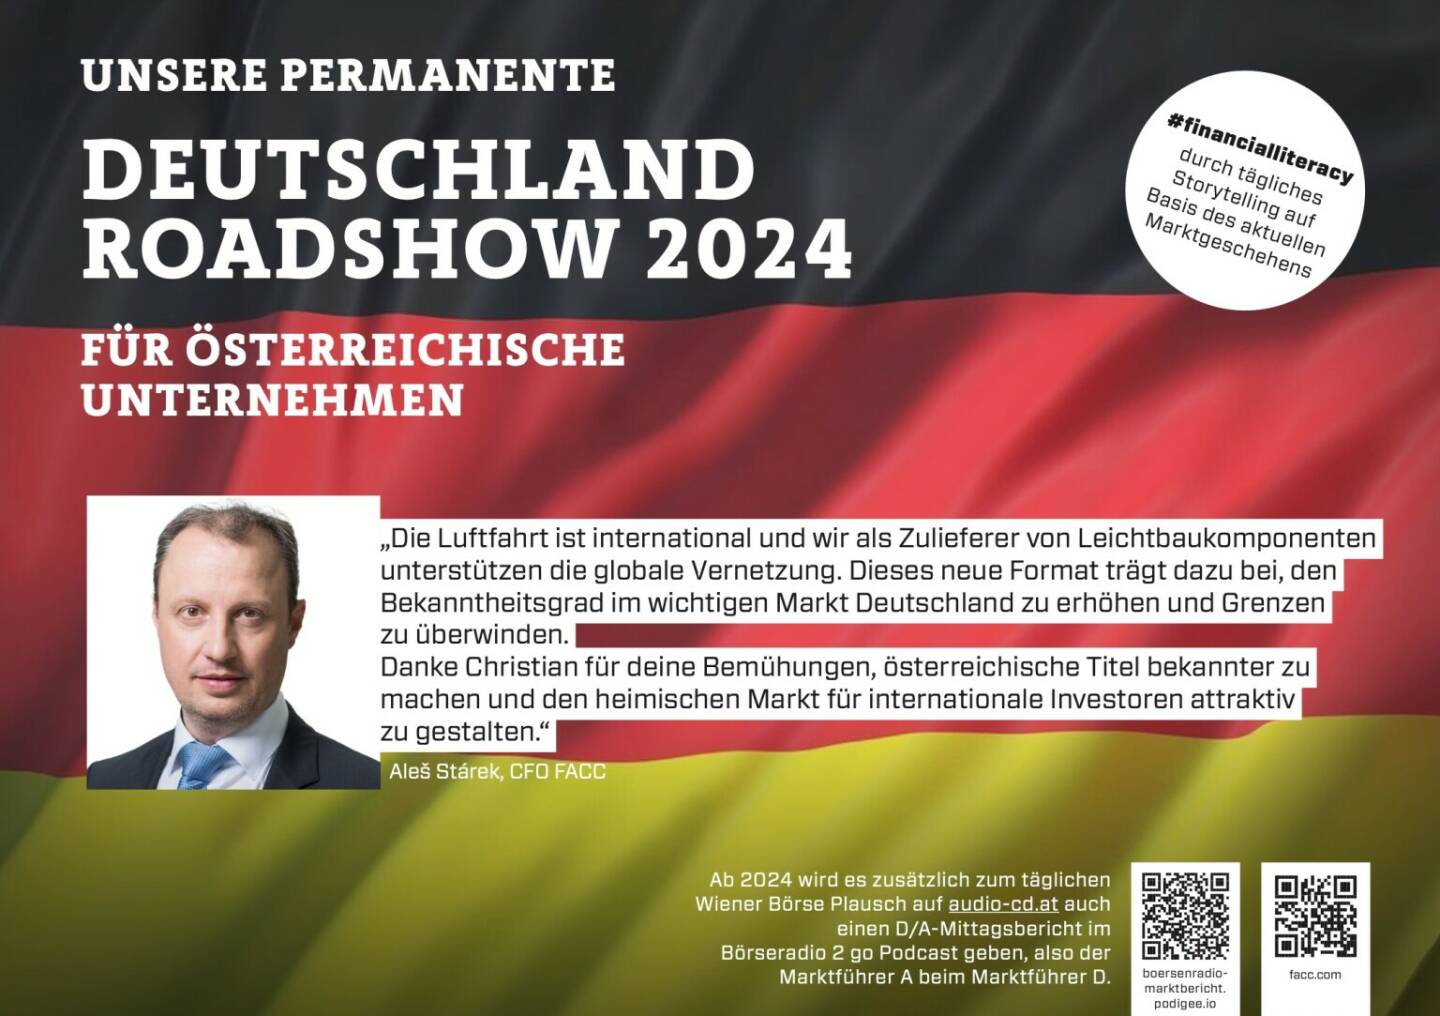 Aleš Stárek mit FACC 2024 mit uns auf Deutschlandroadshow für https://boersenradio-marktbericht.podigee.io